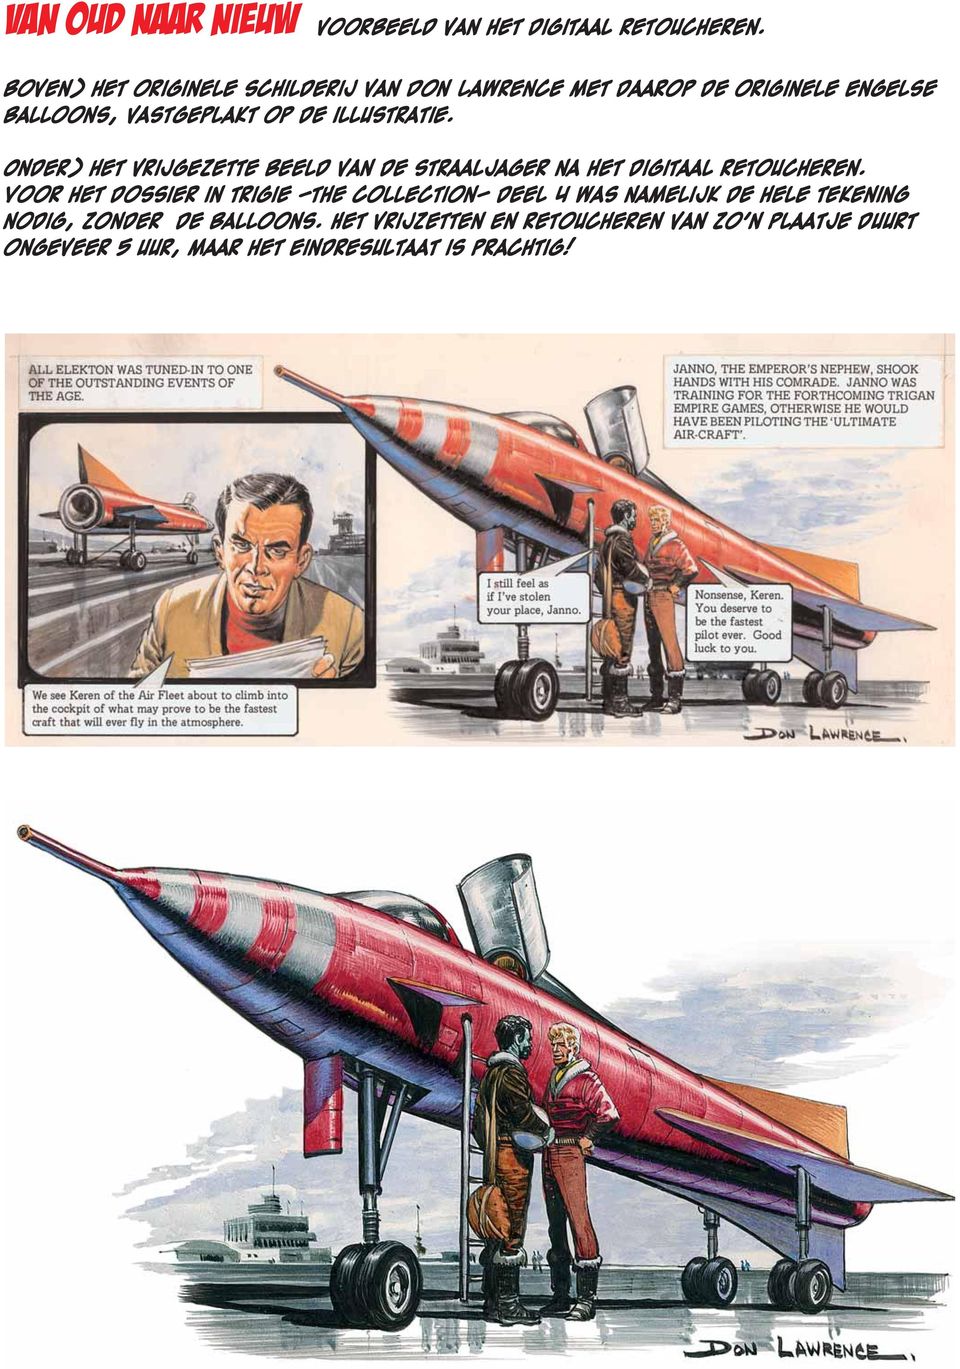 illustratie. Onder) het vrijgezette beeld van de straaljager na het digitaal retoucheren.